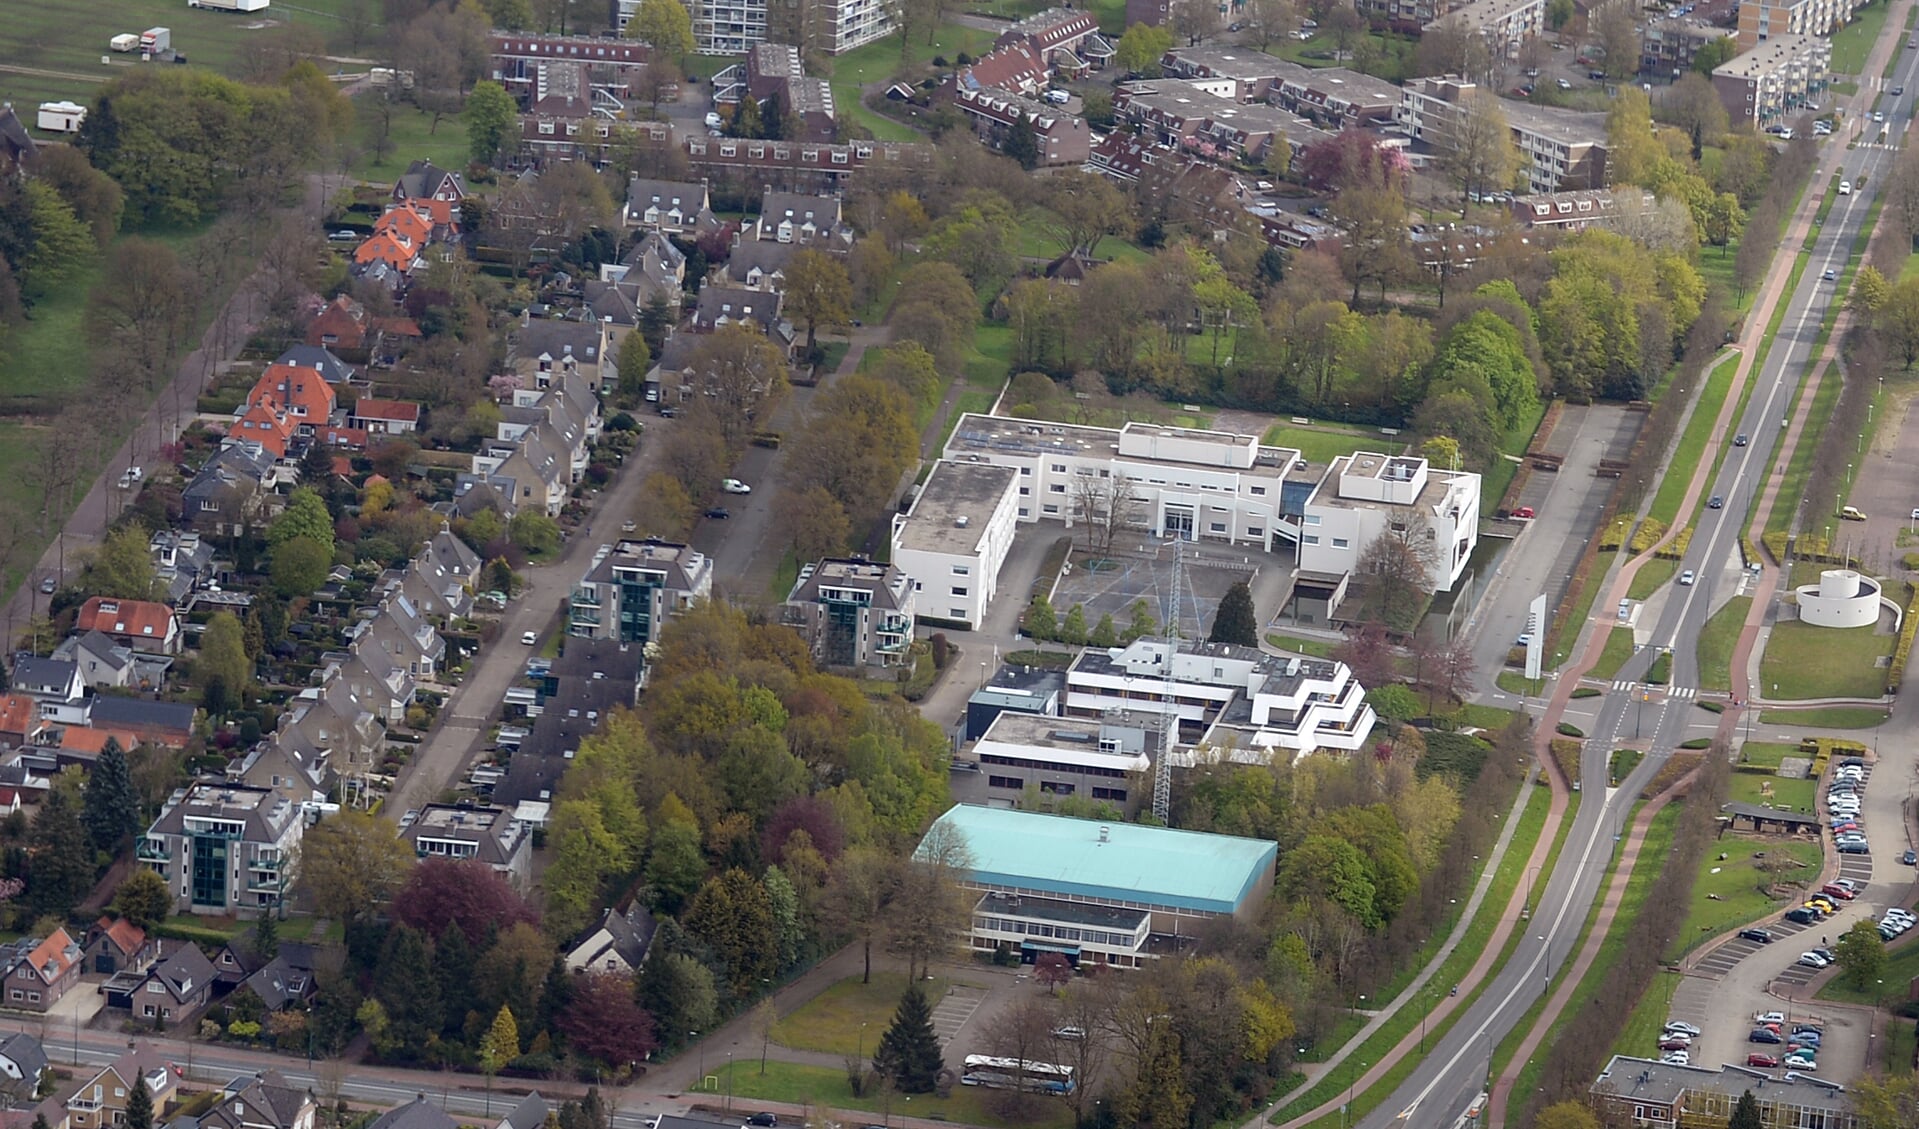 Links de Heetakker, daarnaast het Raadhuisplein met op de voorgrond Beukendal, daarachter het politiebureau en gemeentehuis en rechts de Dalweg.